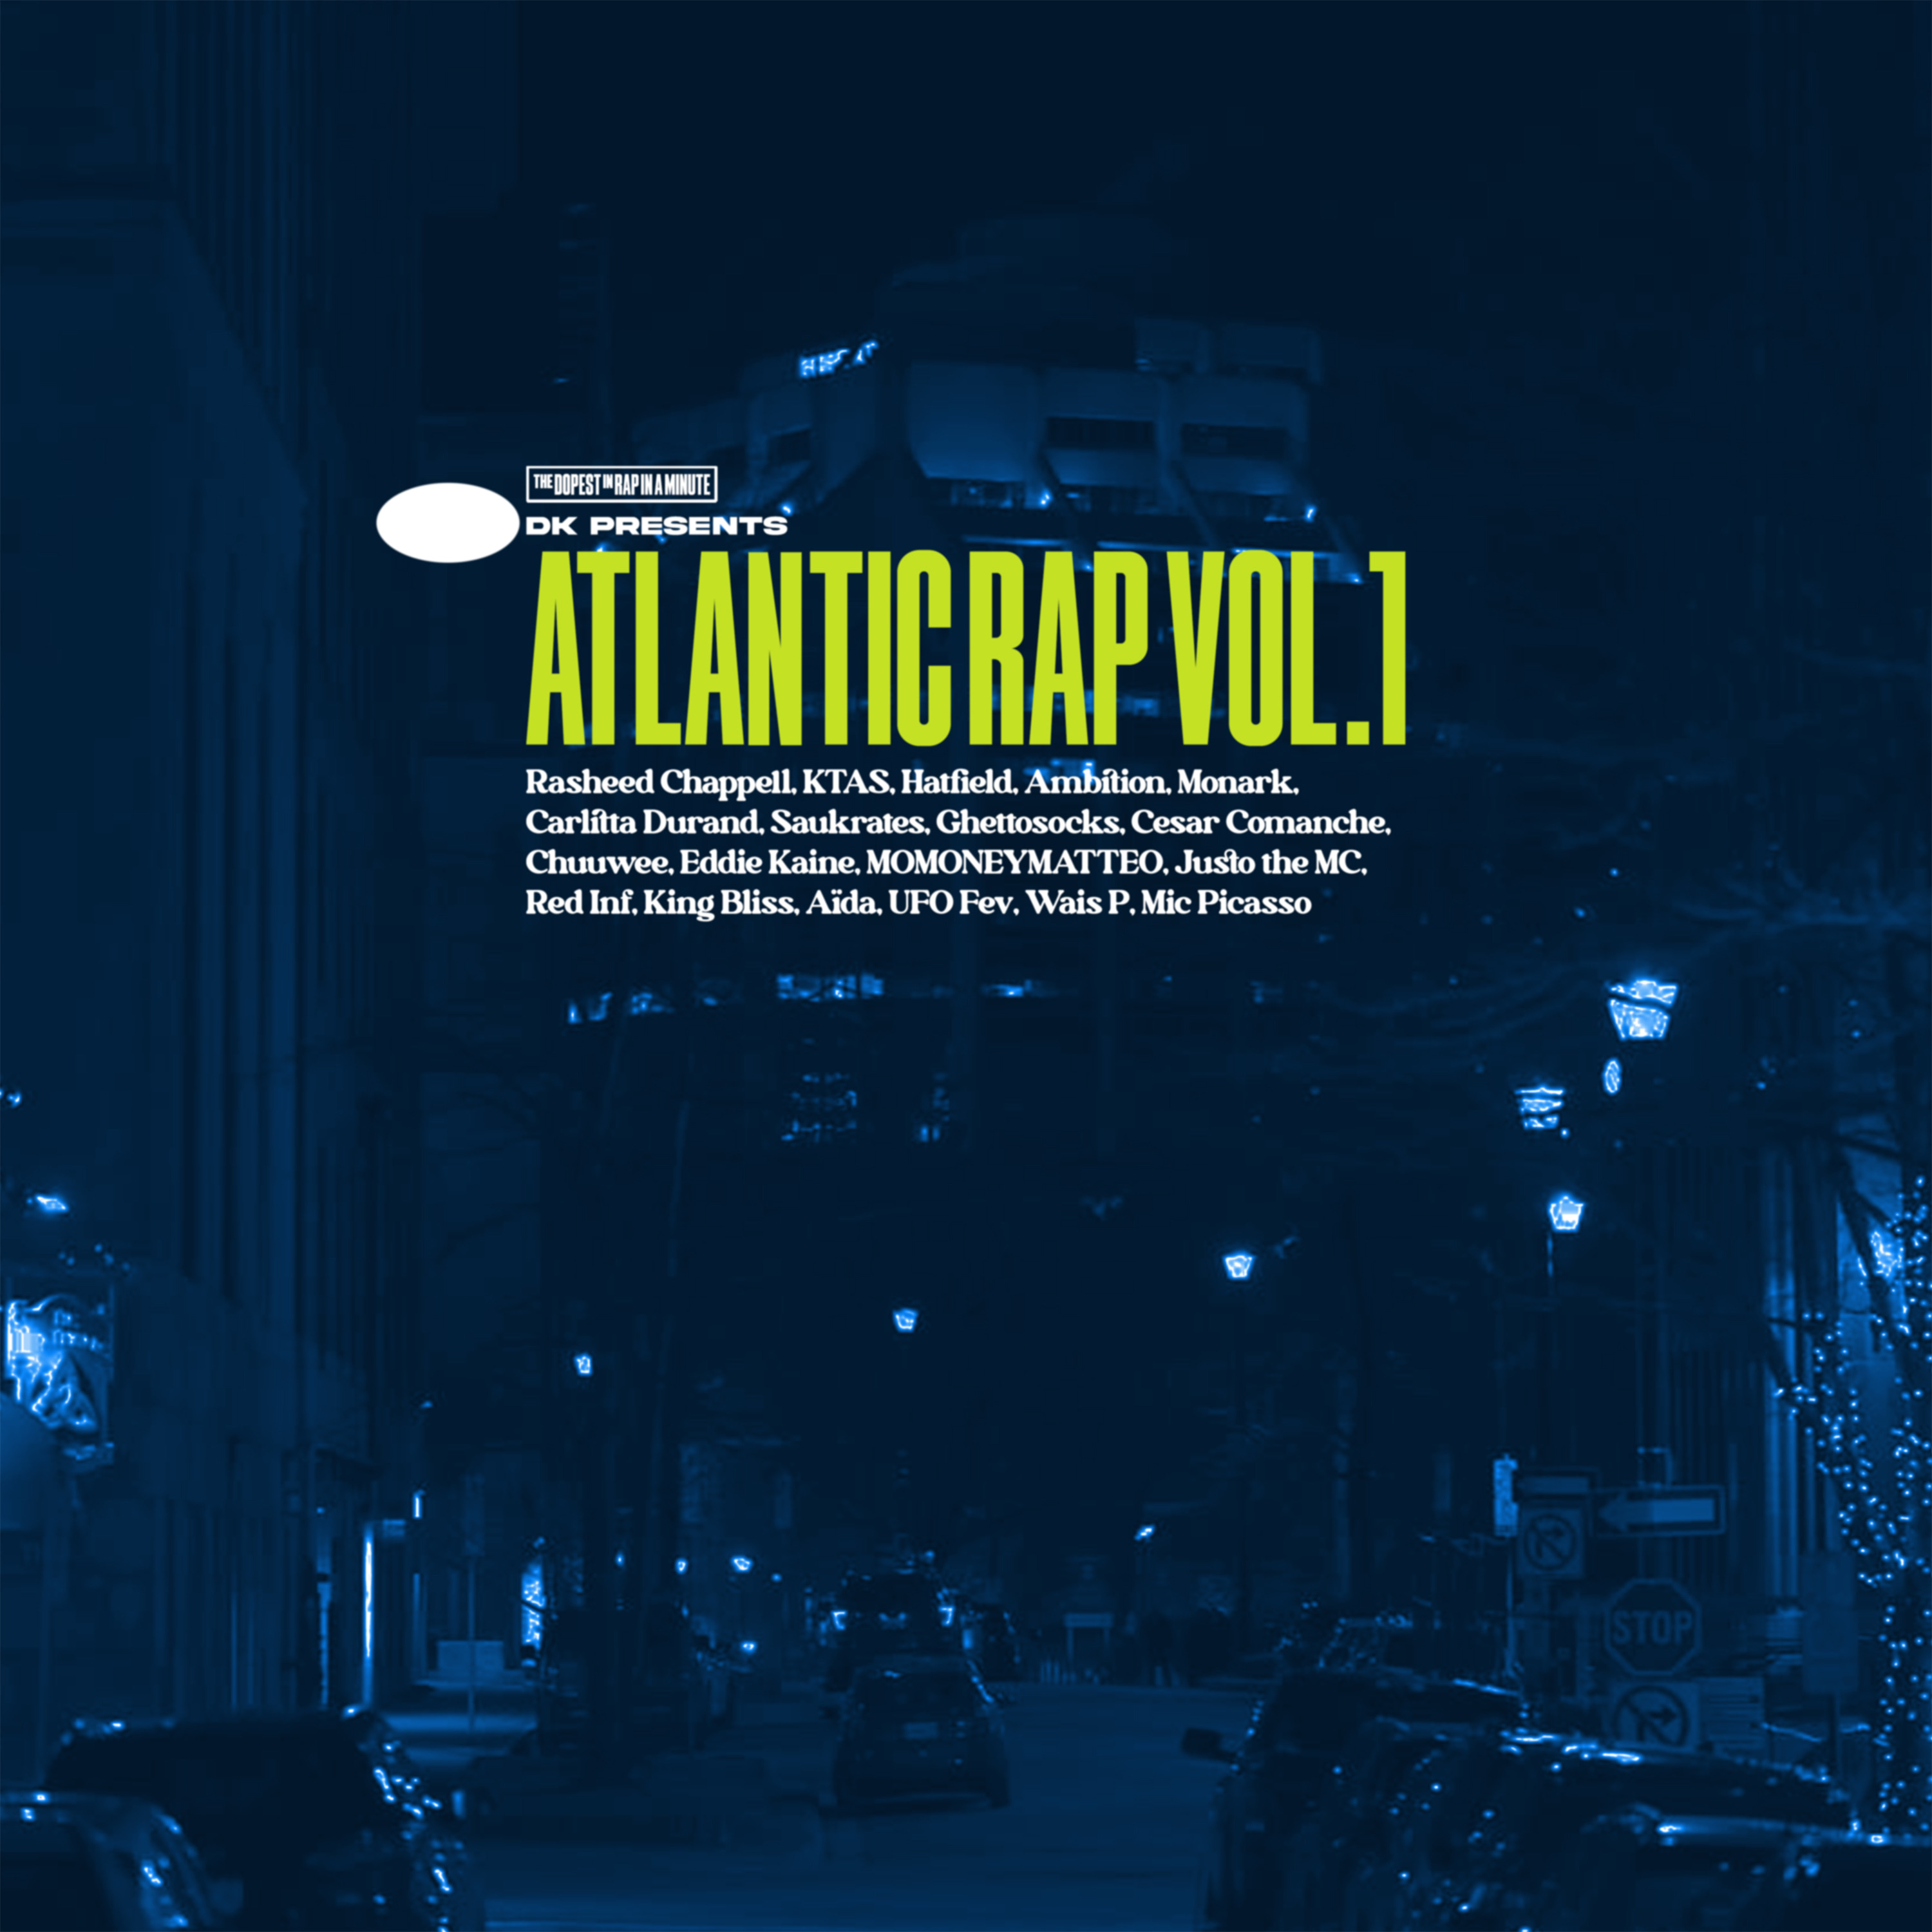 Stream “Atlantic Rap” Vol. 1 thumbnail